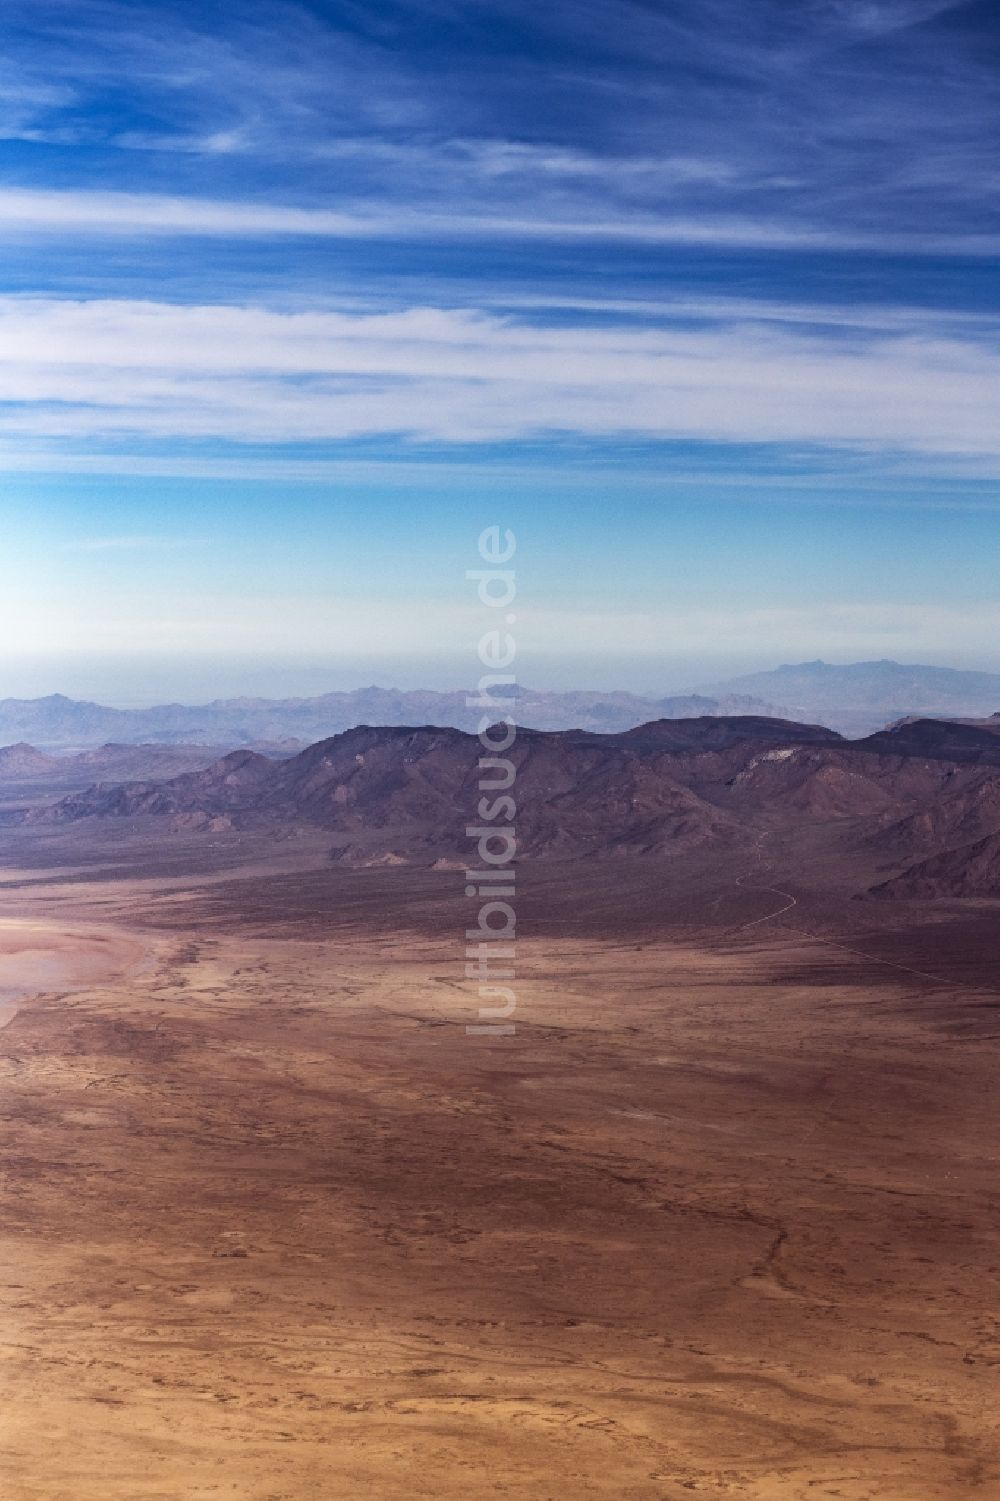 Luftbild Hualapai - Von Bergen umsäumte Tallandschaft in Hualapai in Arizona, USA